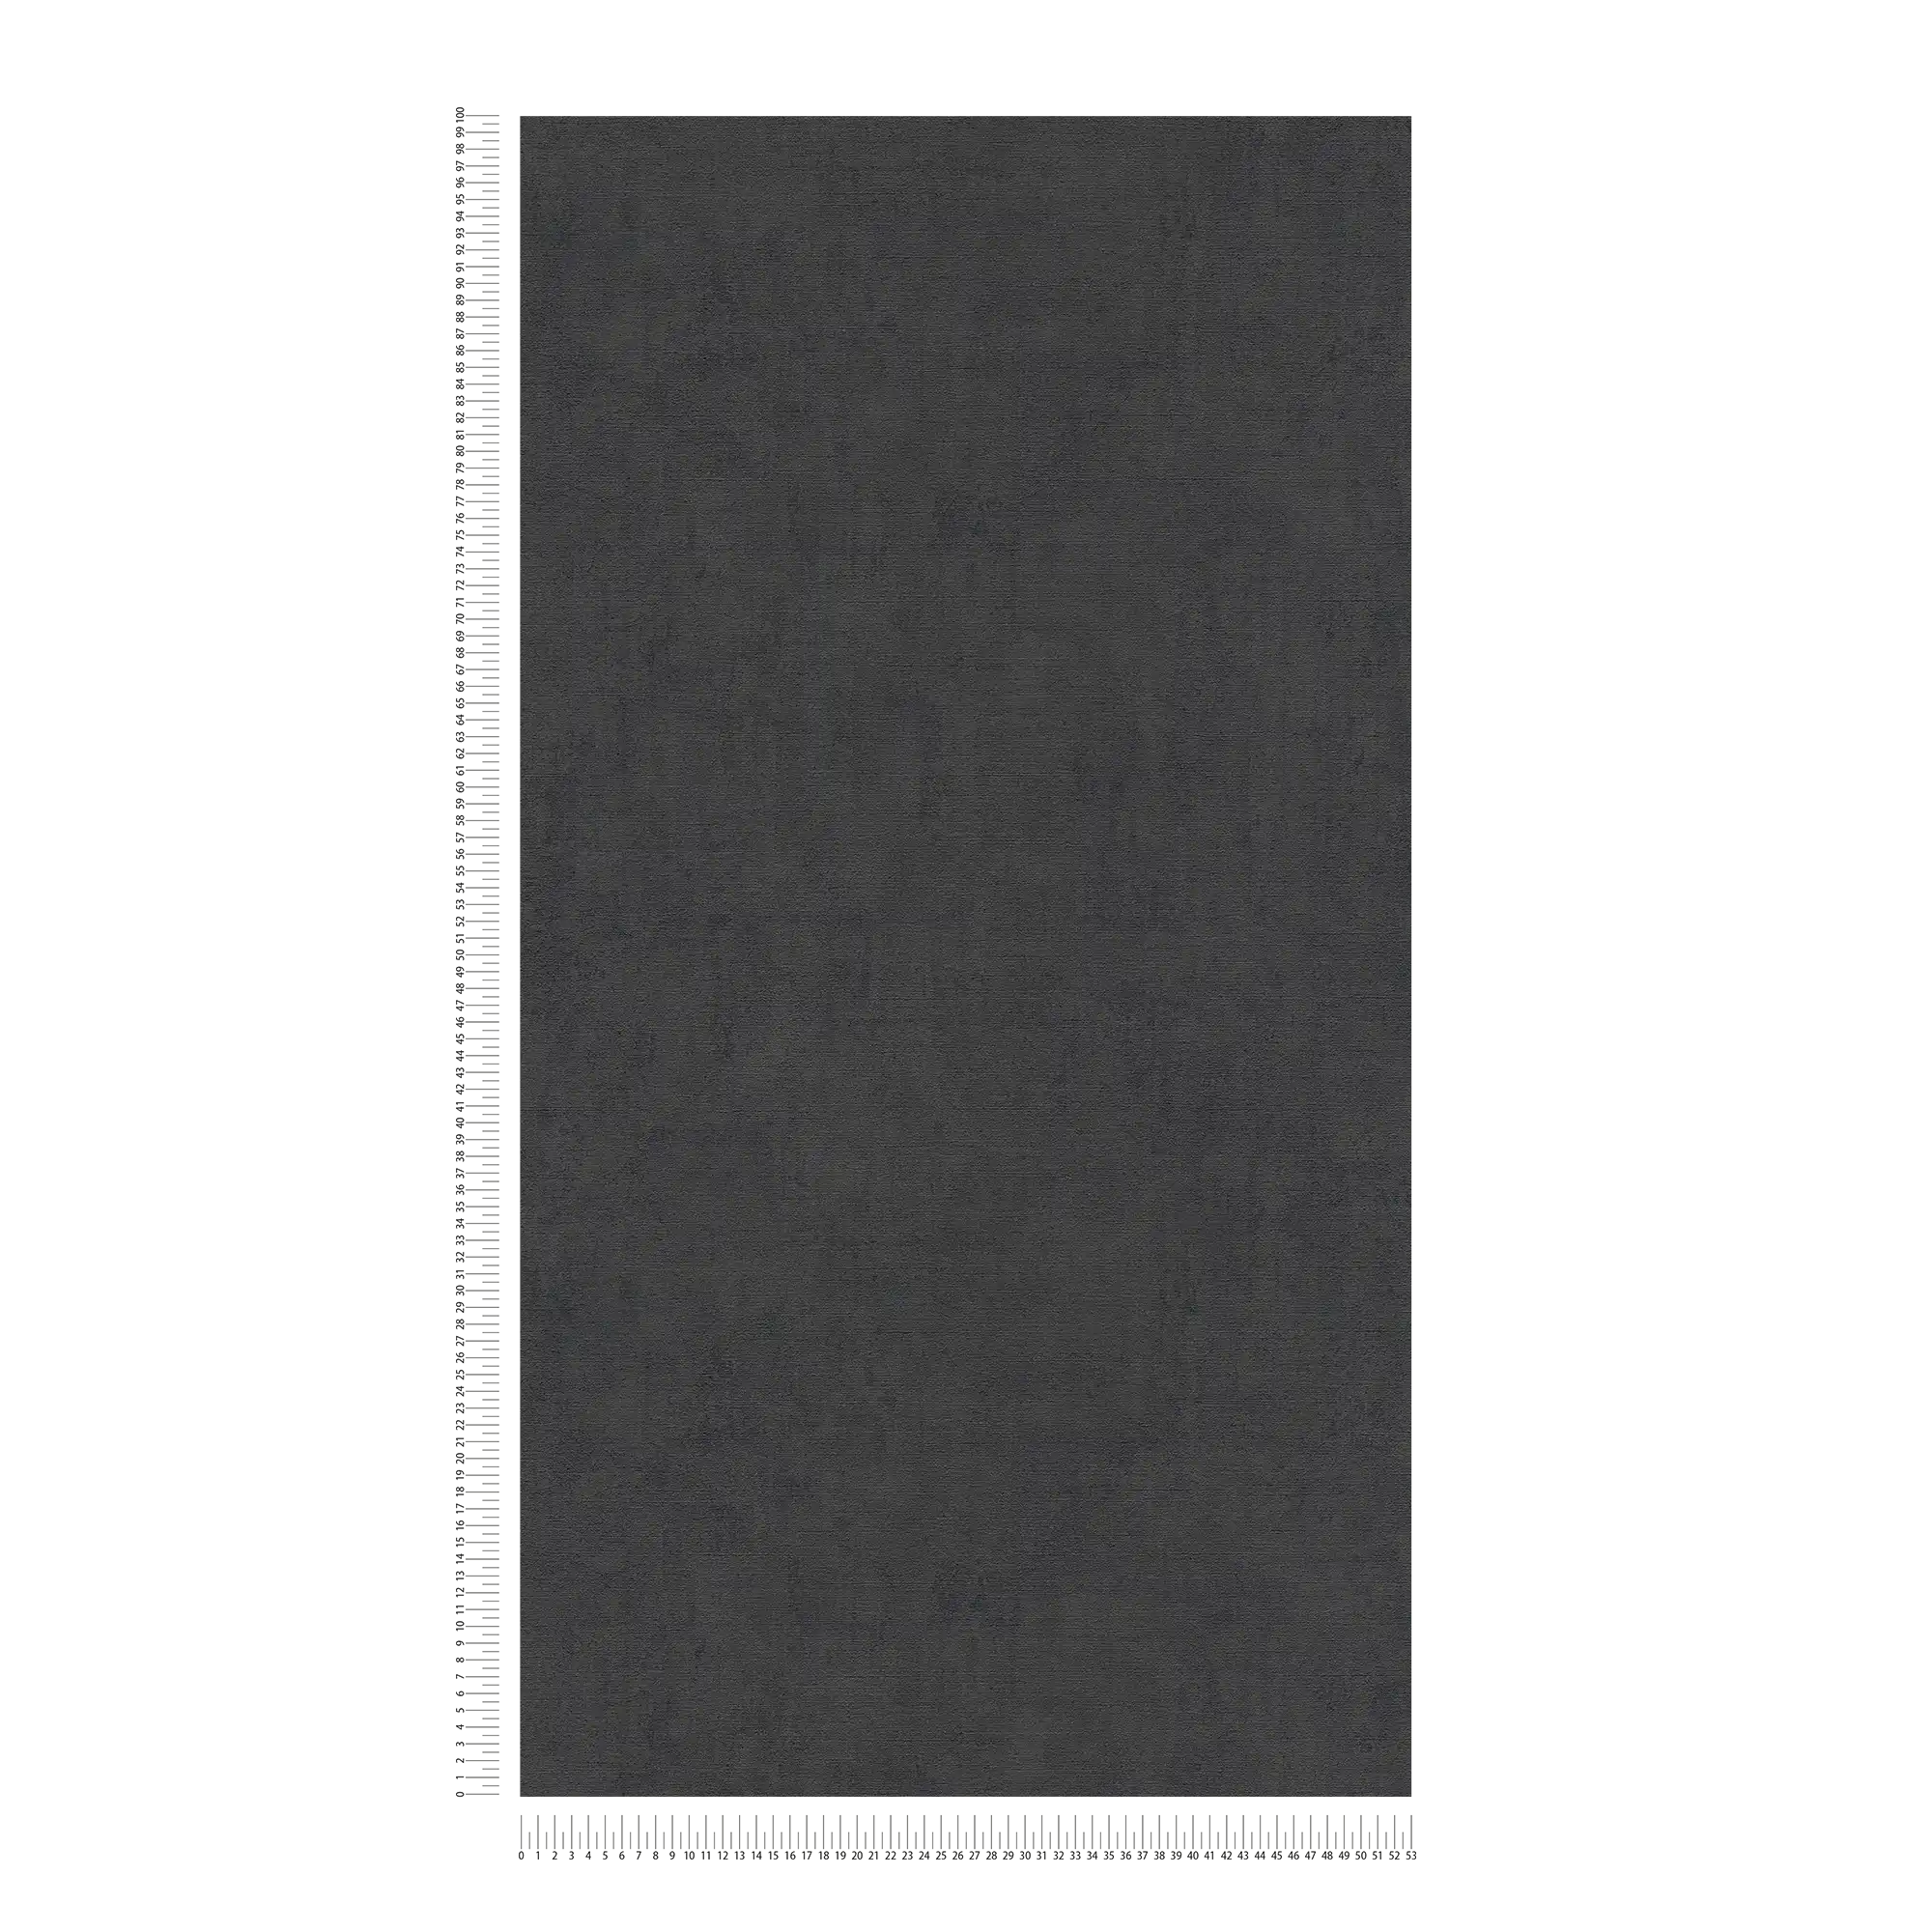             Papier peint noir uni chiné avec structure gaufrée
        